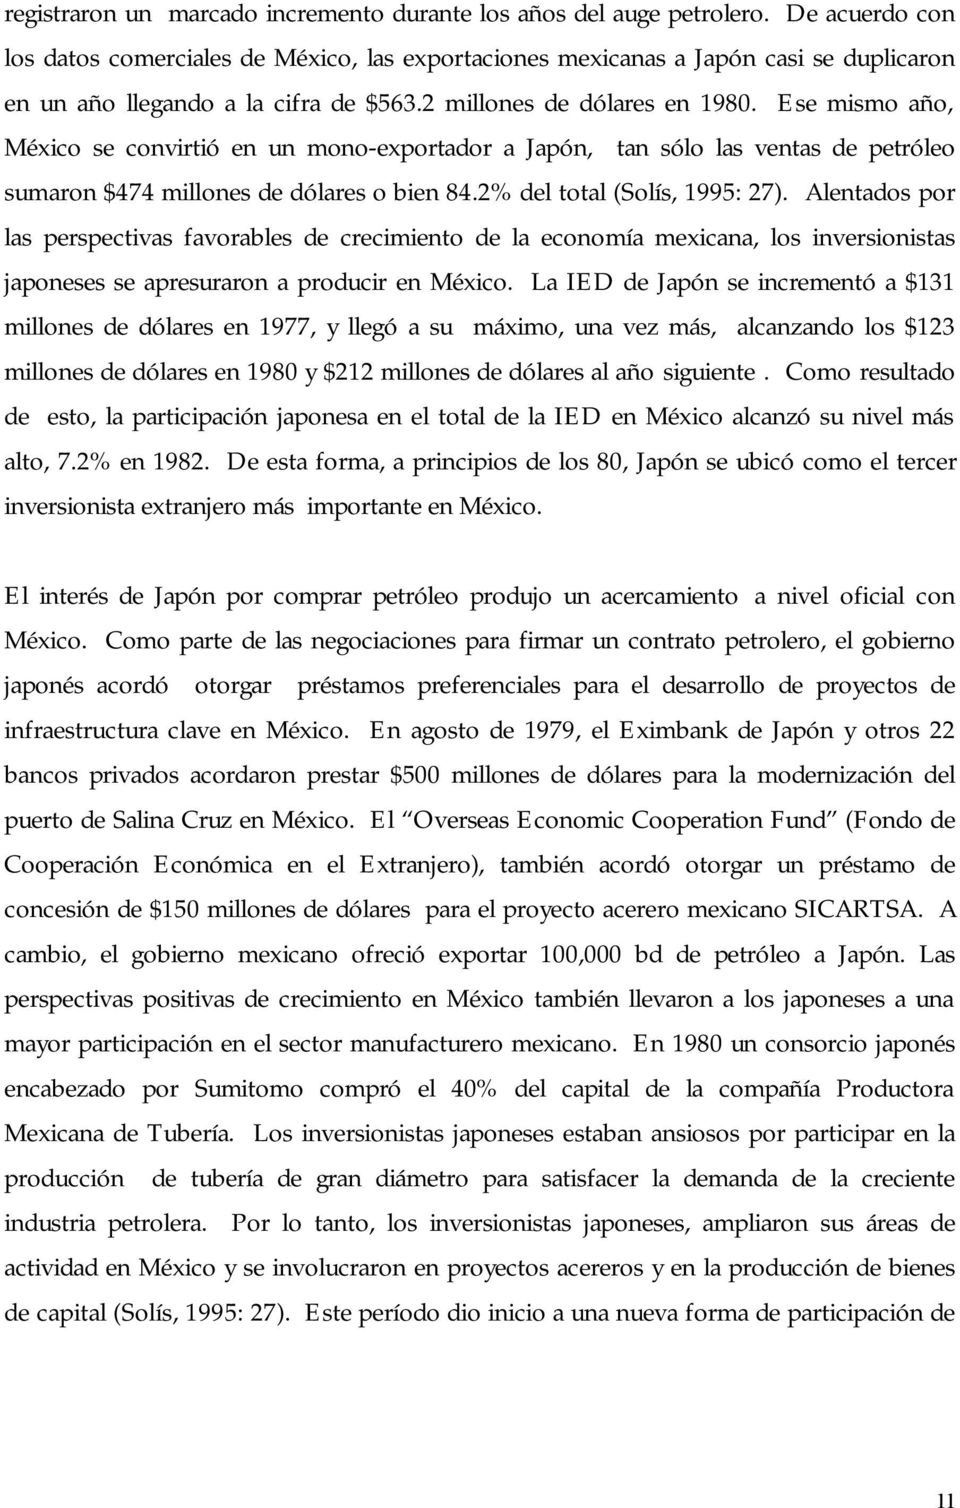 Ese mismo año, México se convirtió en un mono-exportador a Japón, tan sólo las ventas de petróleo sumaron $474 millones de dólares o bien 84.2% del total (Solís, 1995: 27).